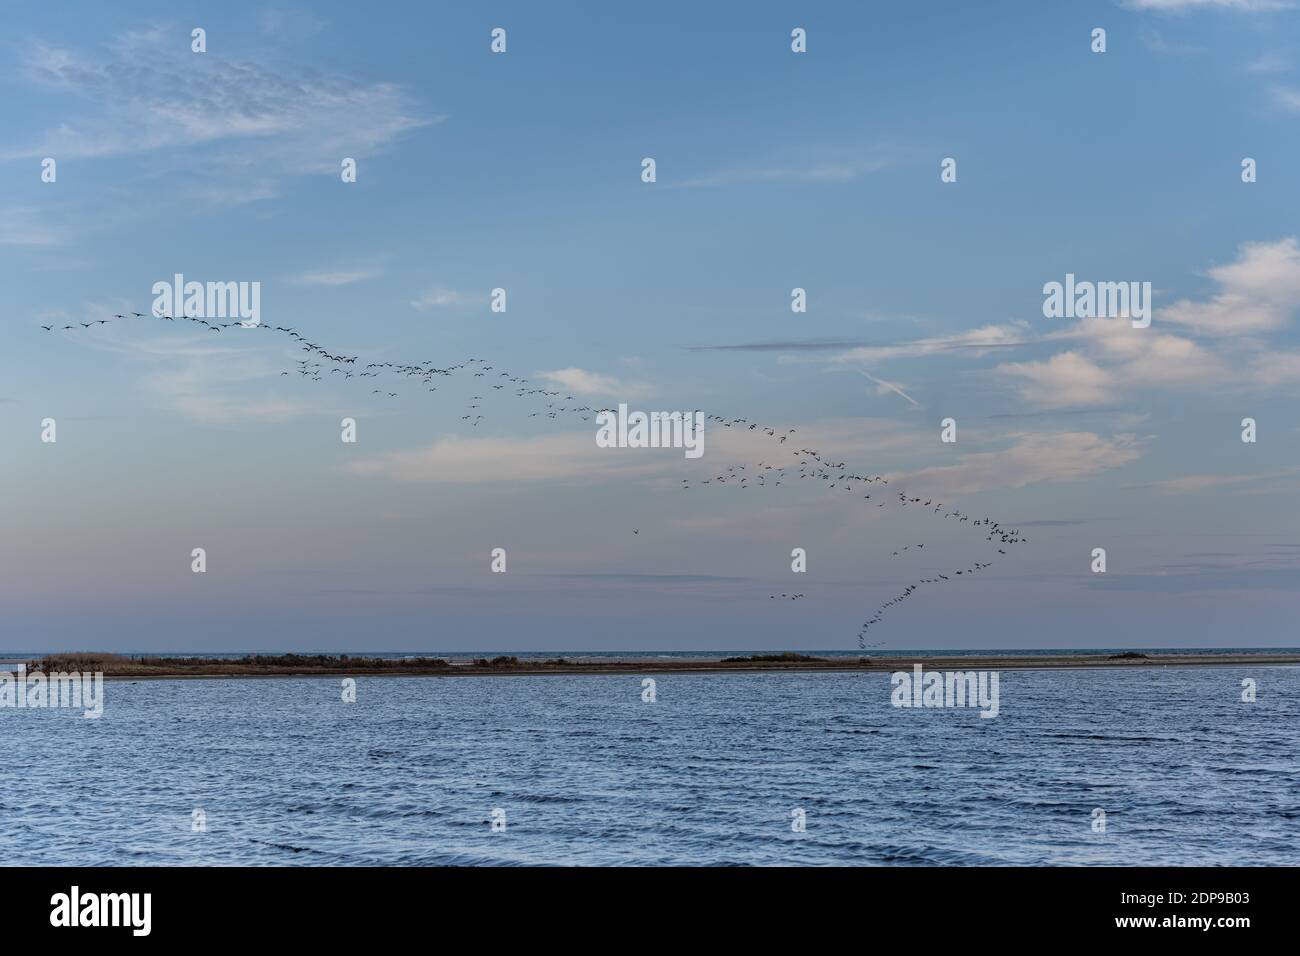 Uccelli migratori che lasciano la Scandinavia per latitudini più calde. Foto di Falsterbo a Scania, Svezia meridionale Foto Stock